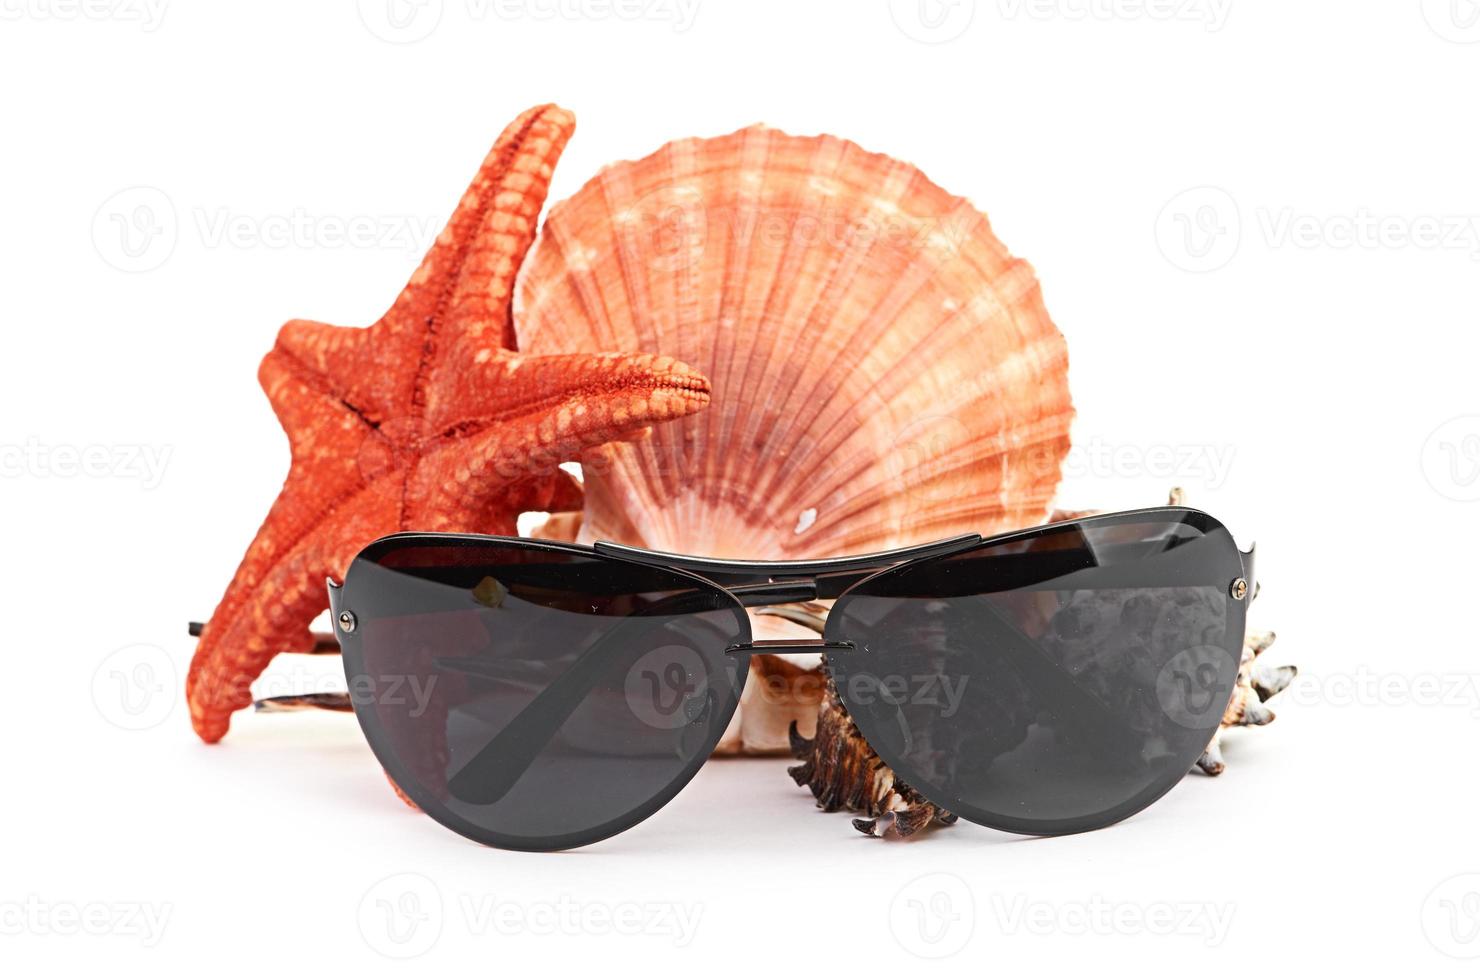 lunettes de soleil sur l'étoile de mer et la coquille photo